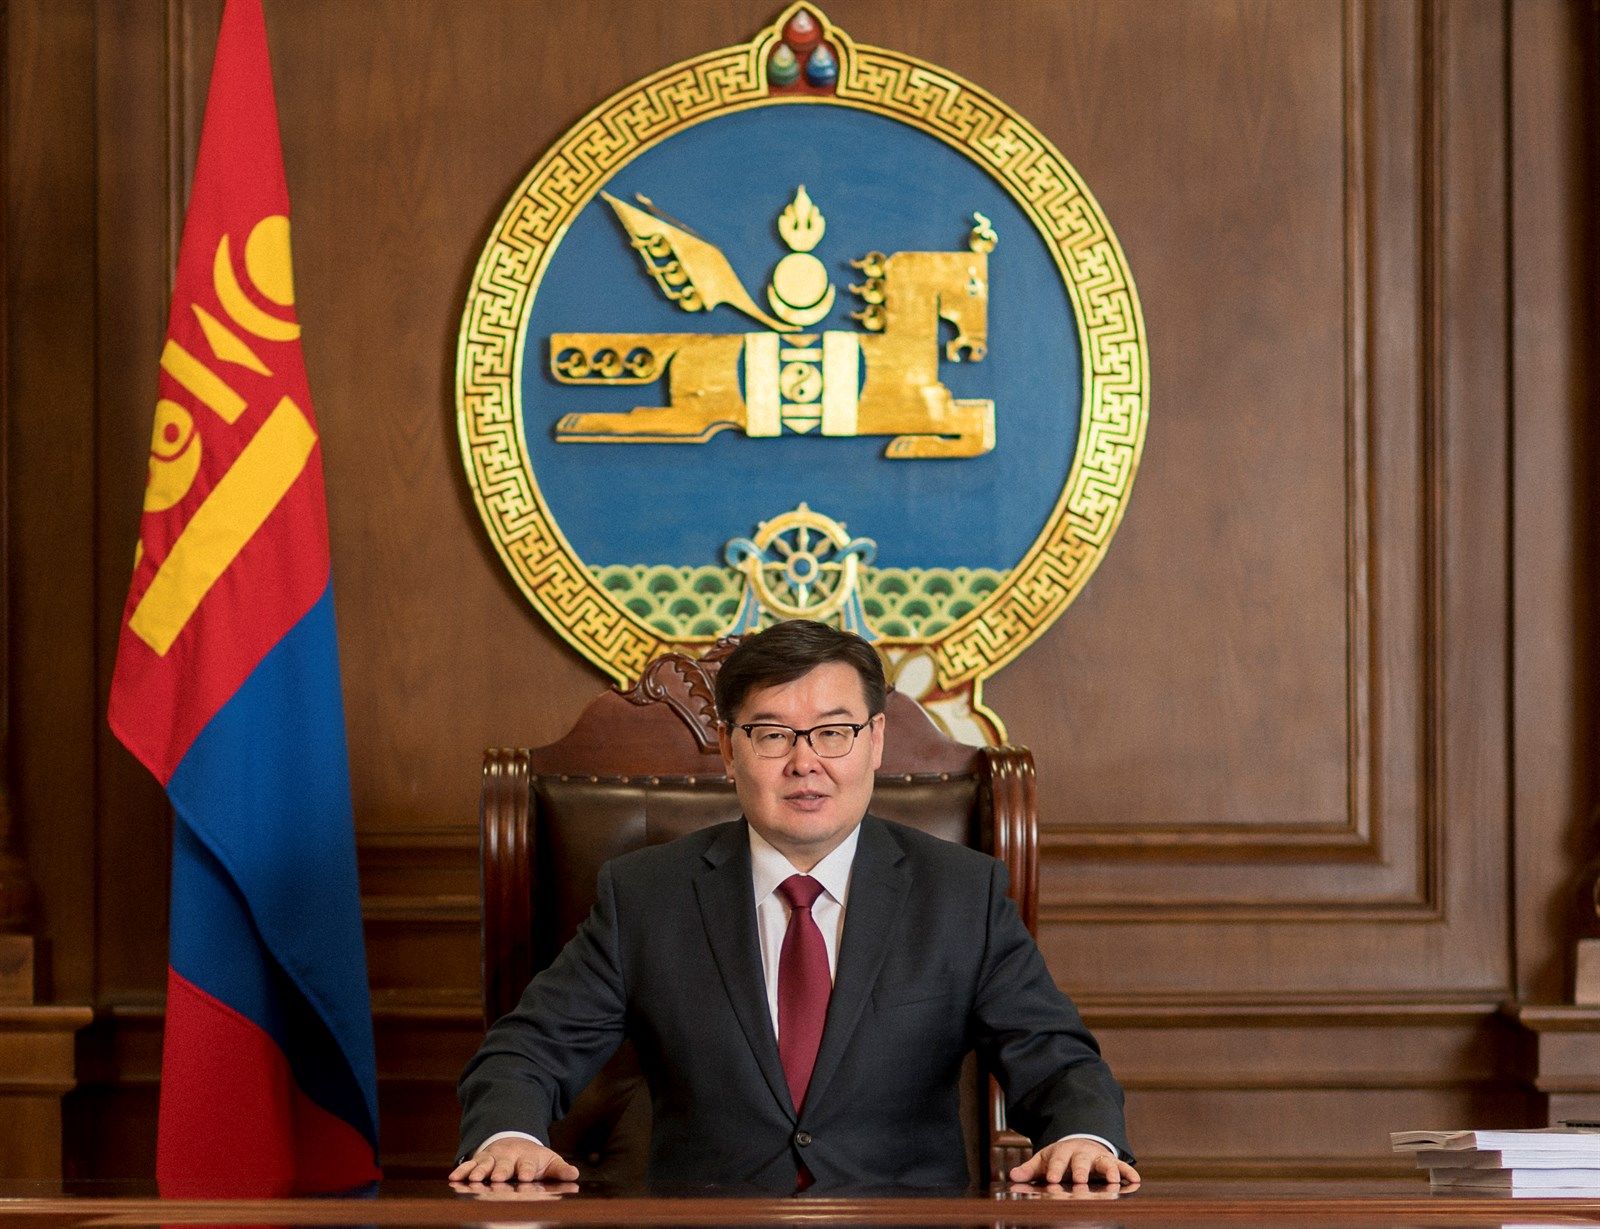 의회와 헌법재판소 간의 협력이 몽골과 국민의 이익을 위해 계속 발전할 것이라고 확신.jpg